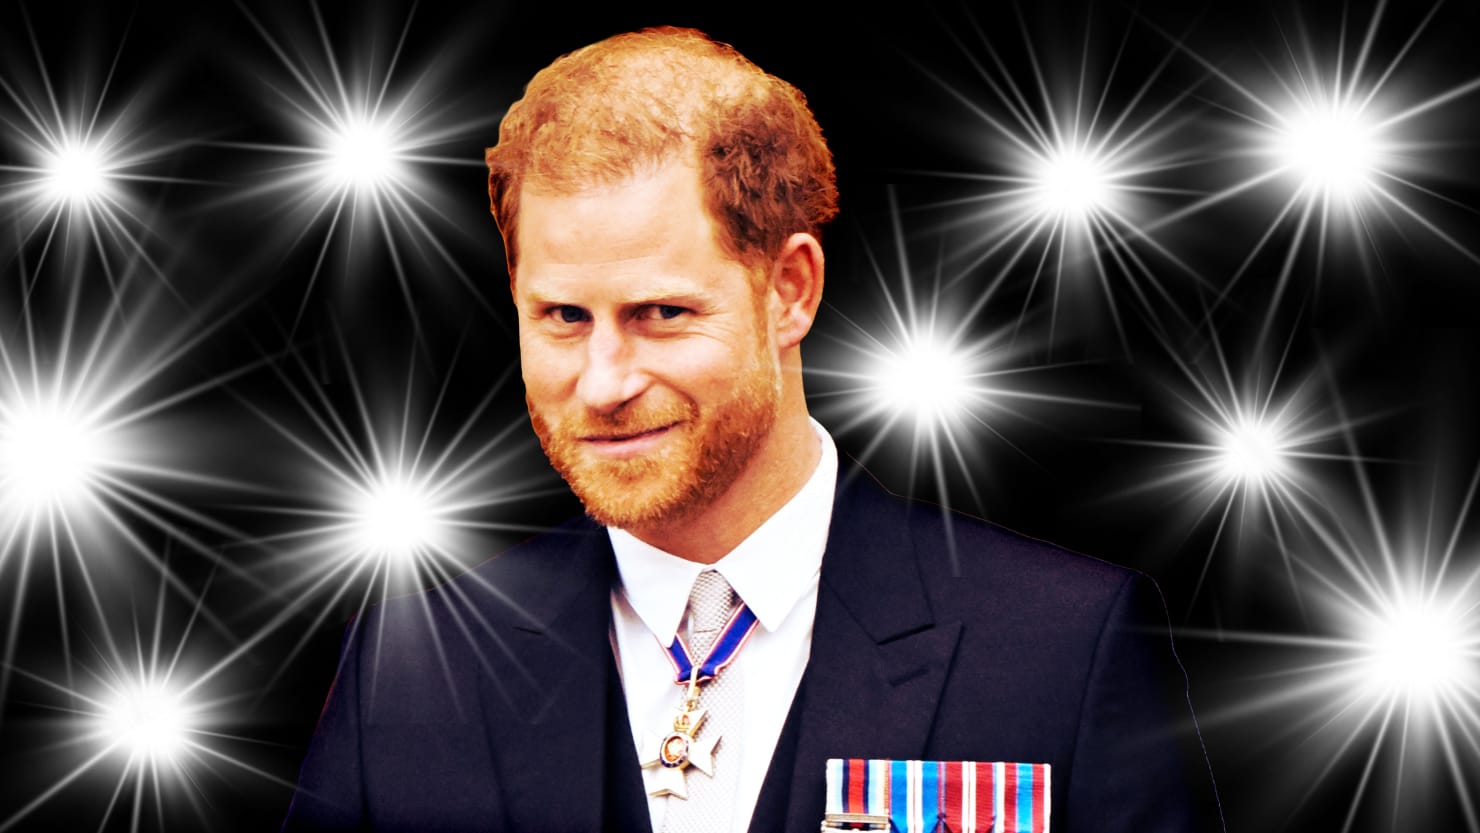 Le prix du prince Harry montre son « besoin désespéré d’attention » : sources royales